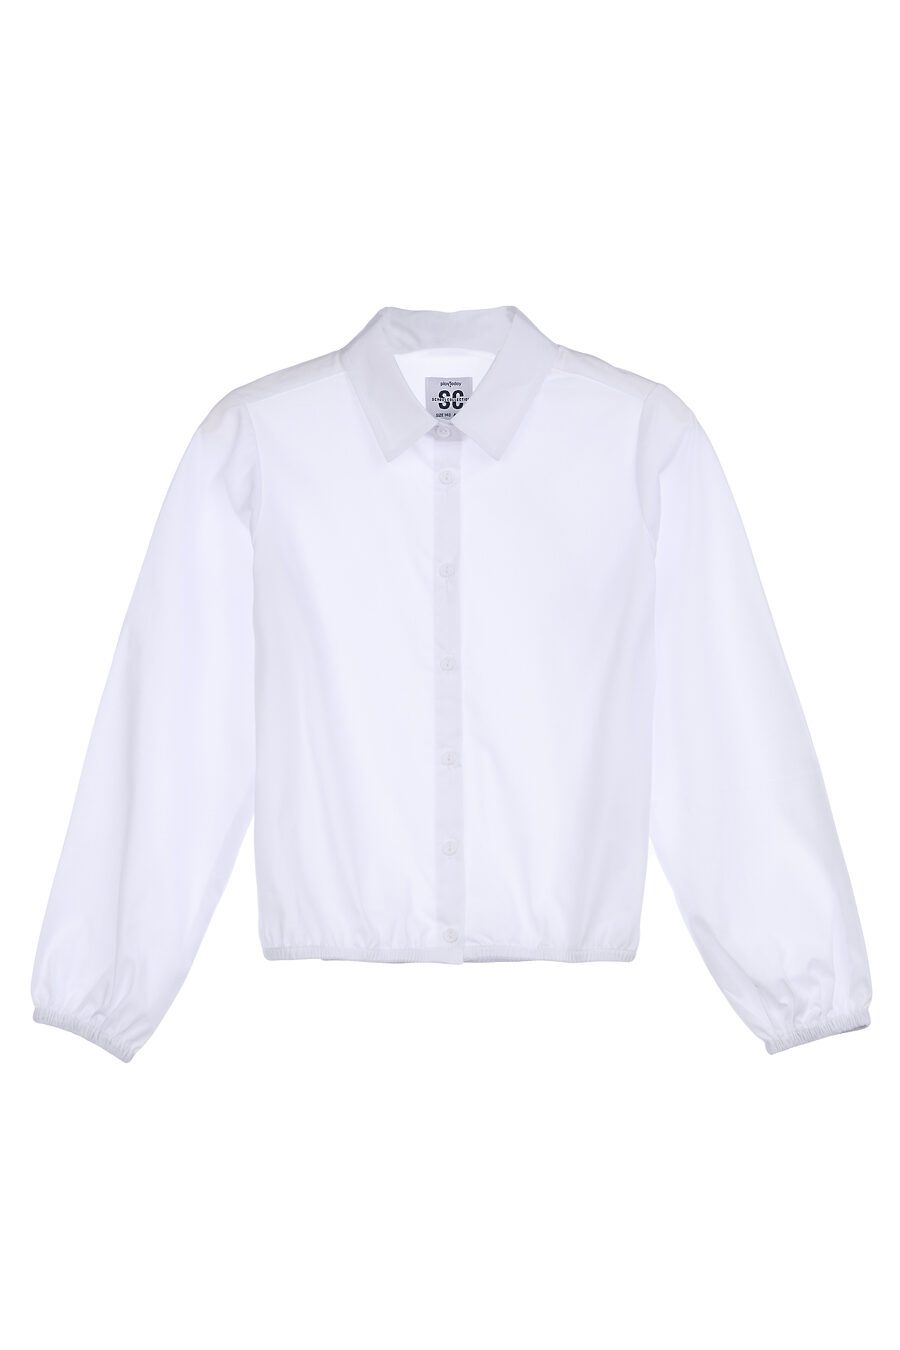 Блуза PLAYTODAY (785747), купить в Moyo.moda